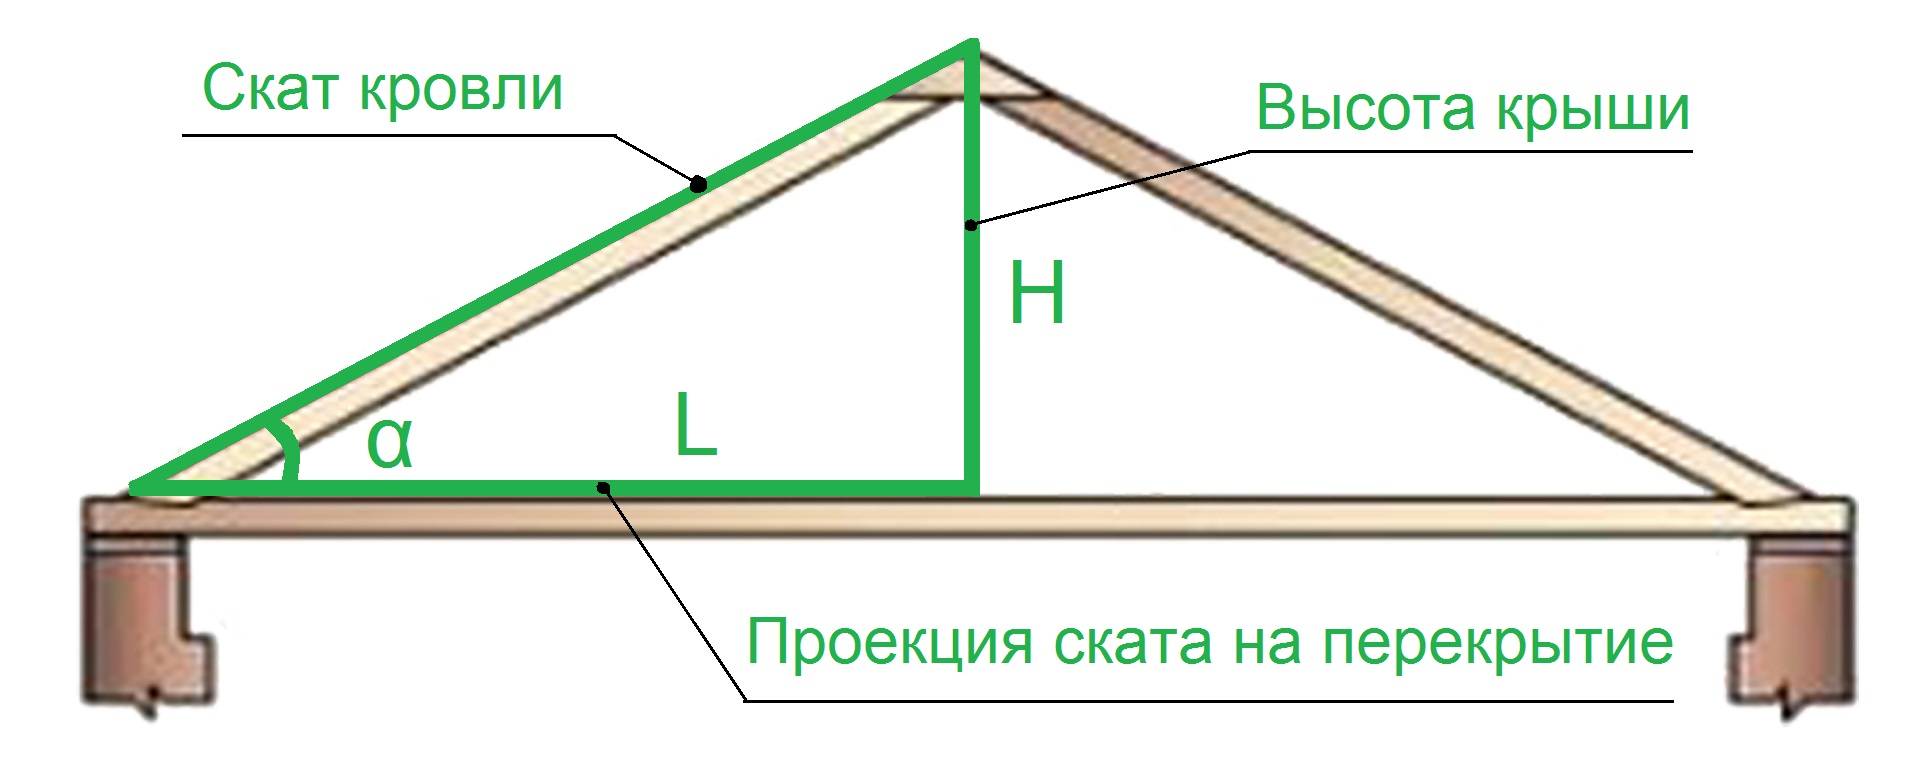 Расчет двухскатной крыши: площадь, стропила, высота